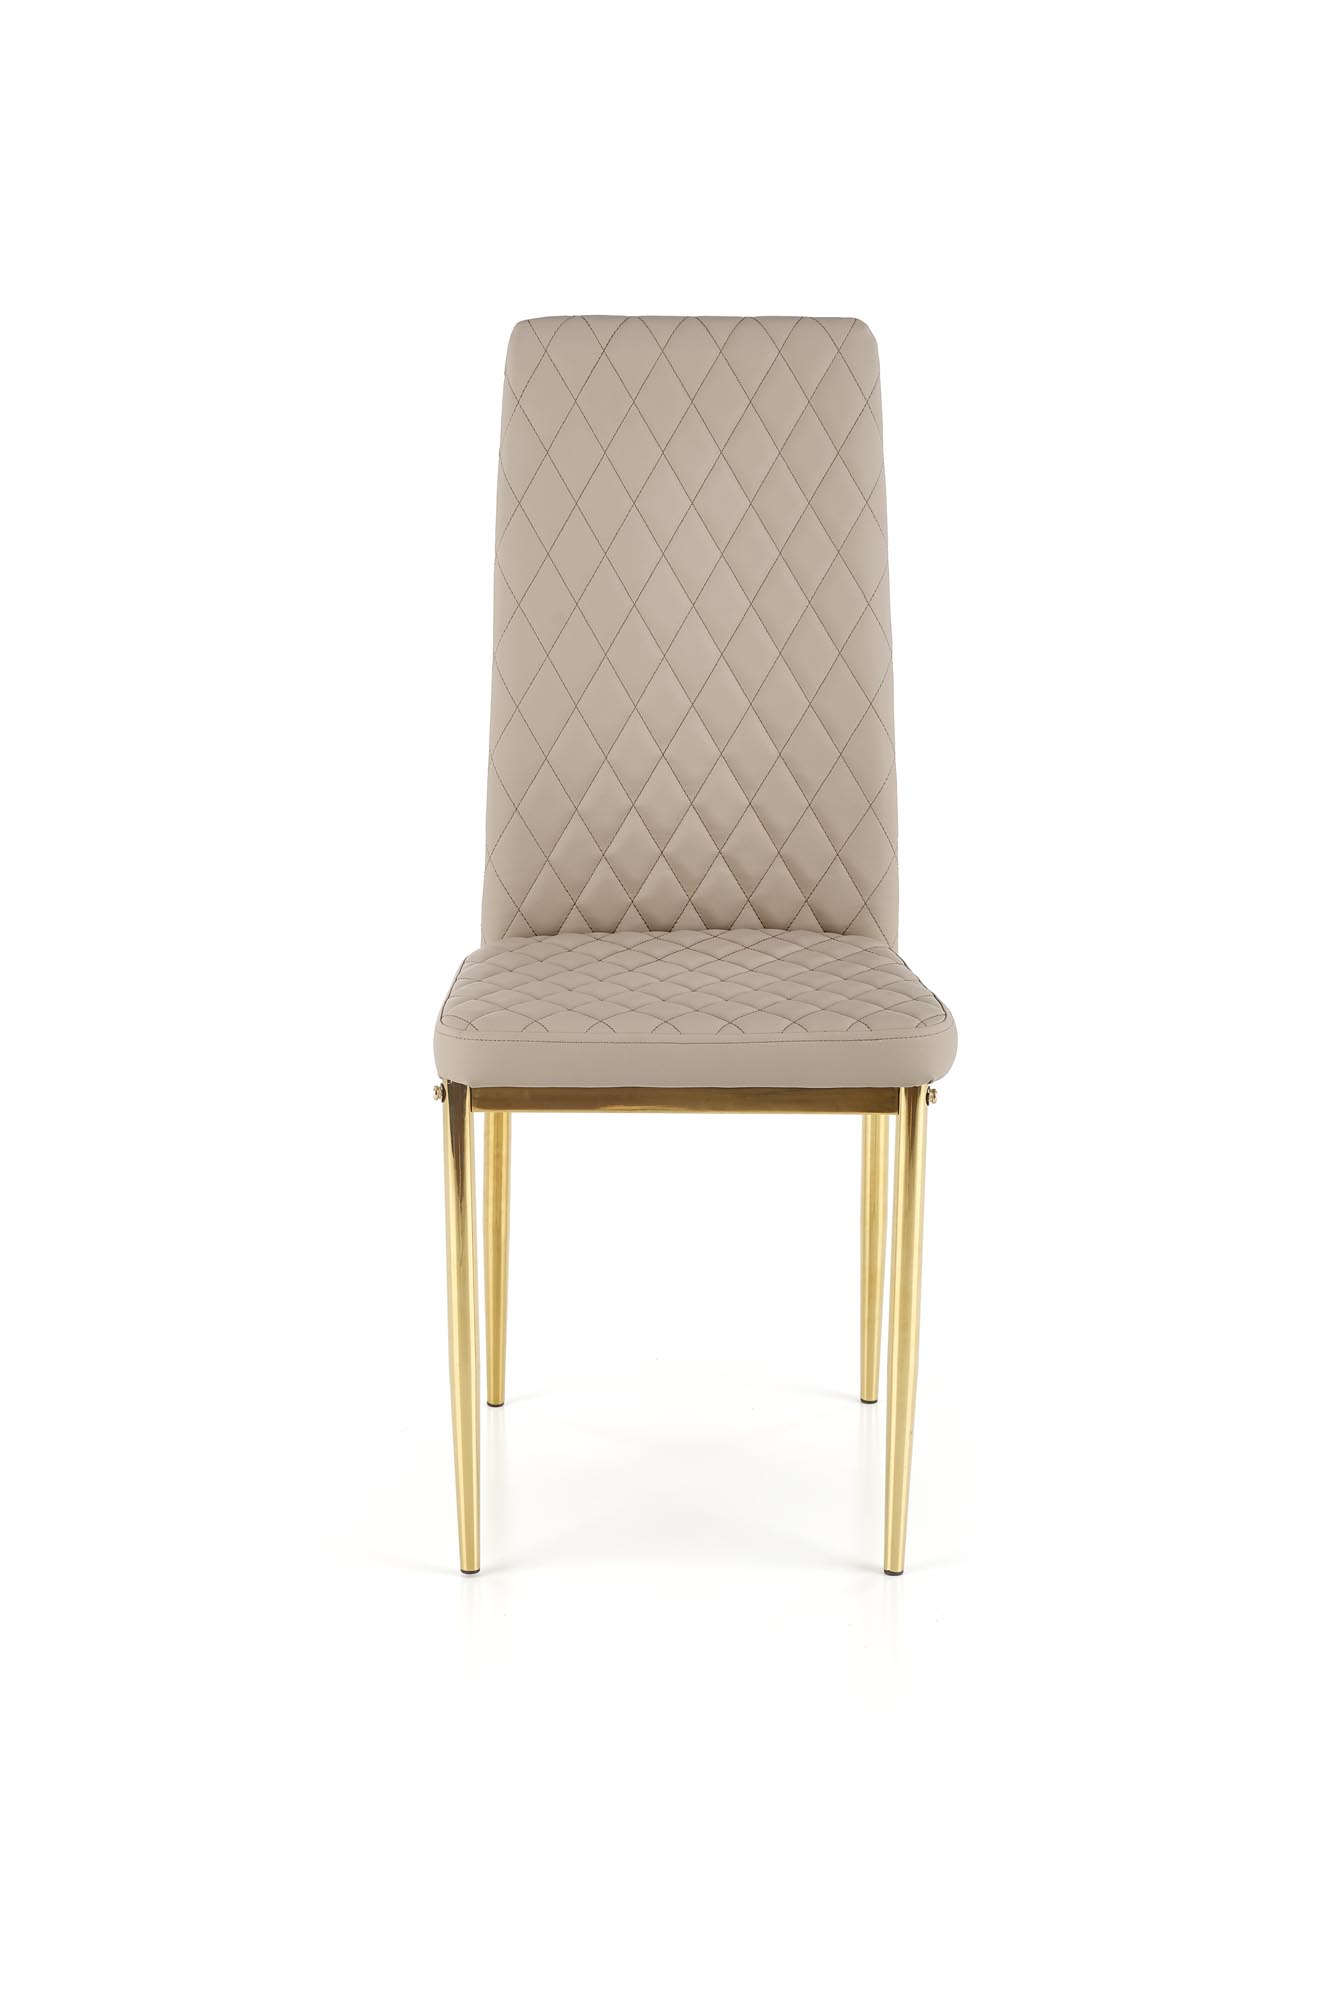 Krzesło tapicerowane K501 - cappuccino / złoty krzesło tapicerowane k501 - cappuccino / złoty